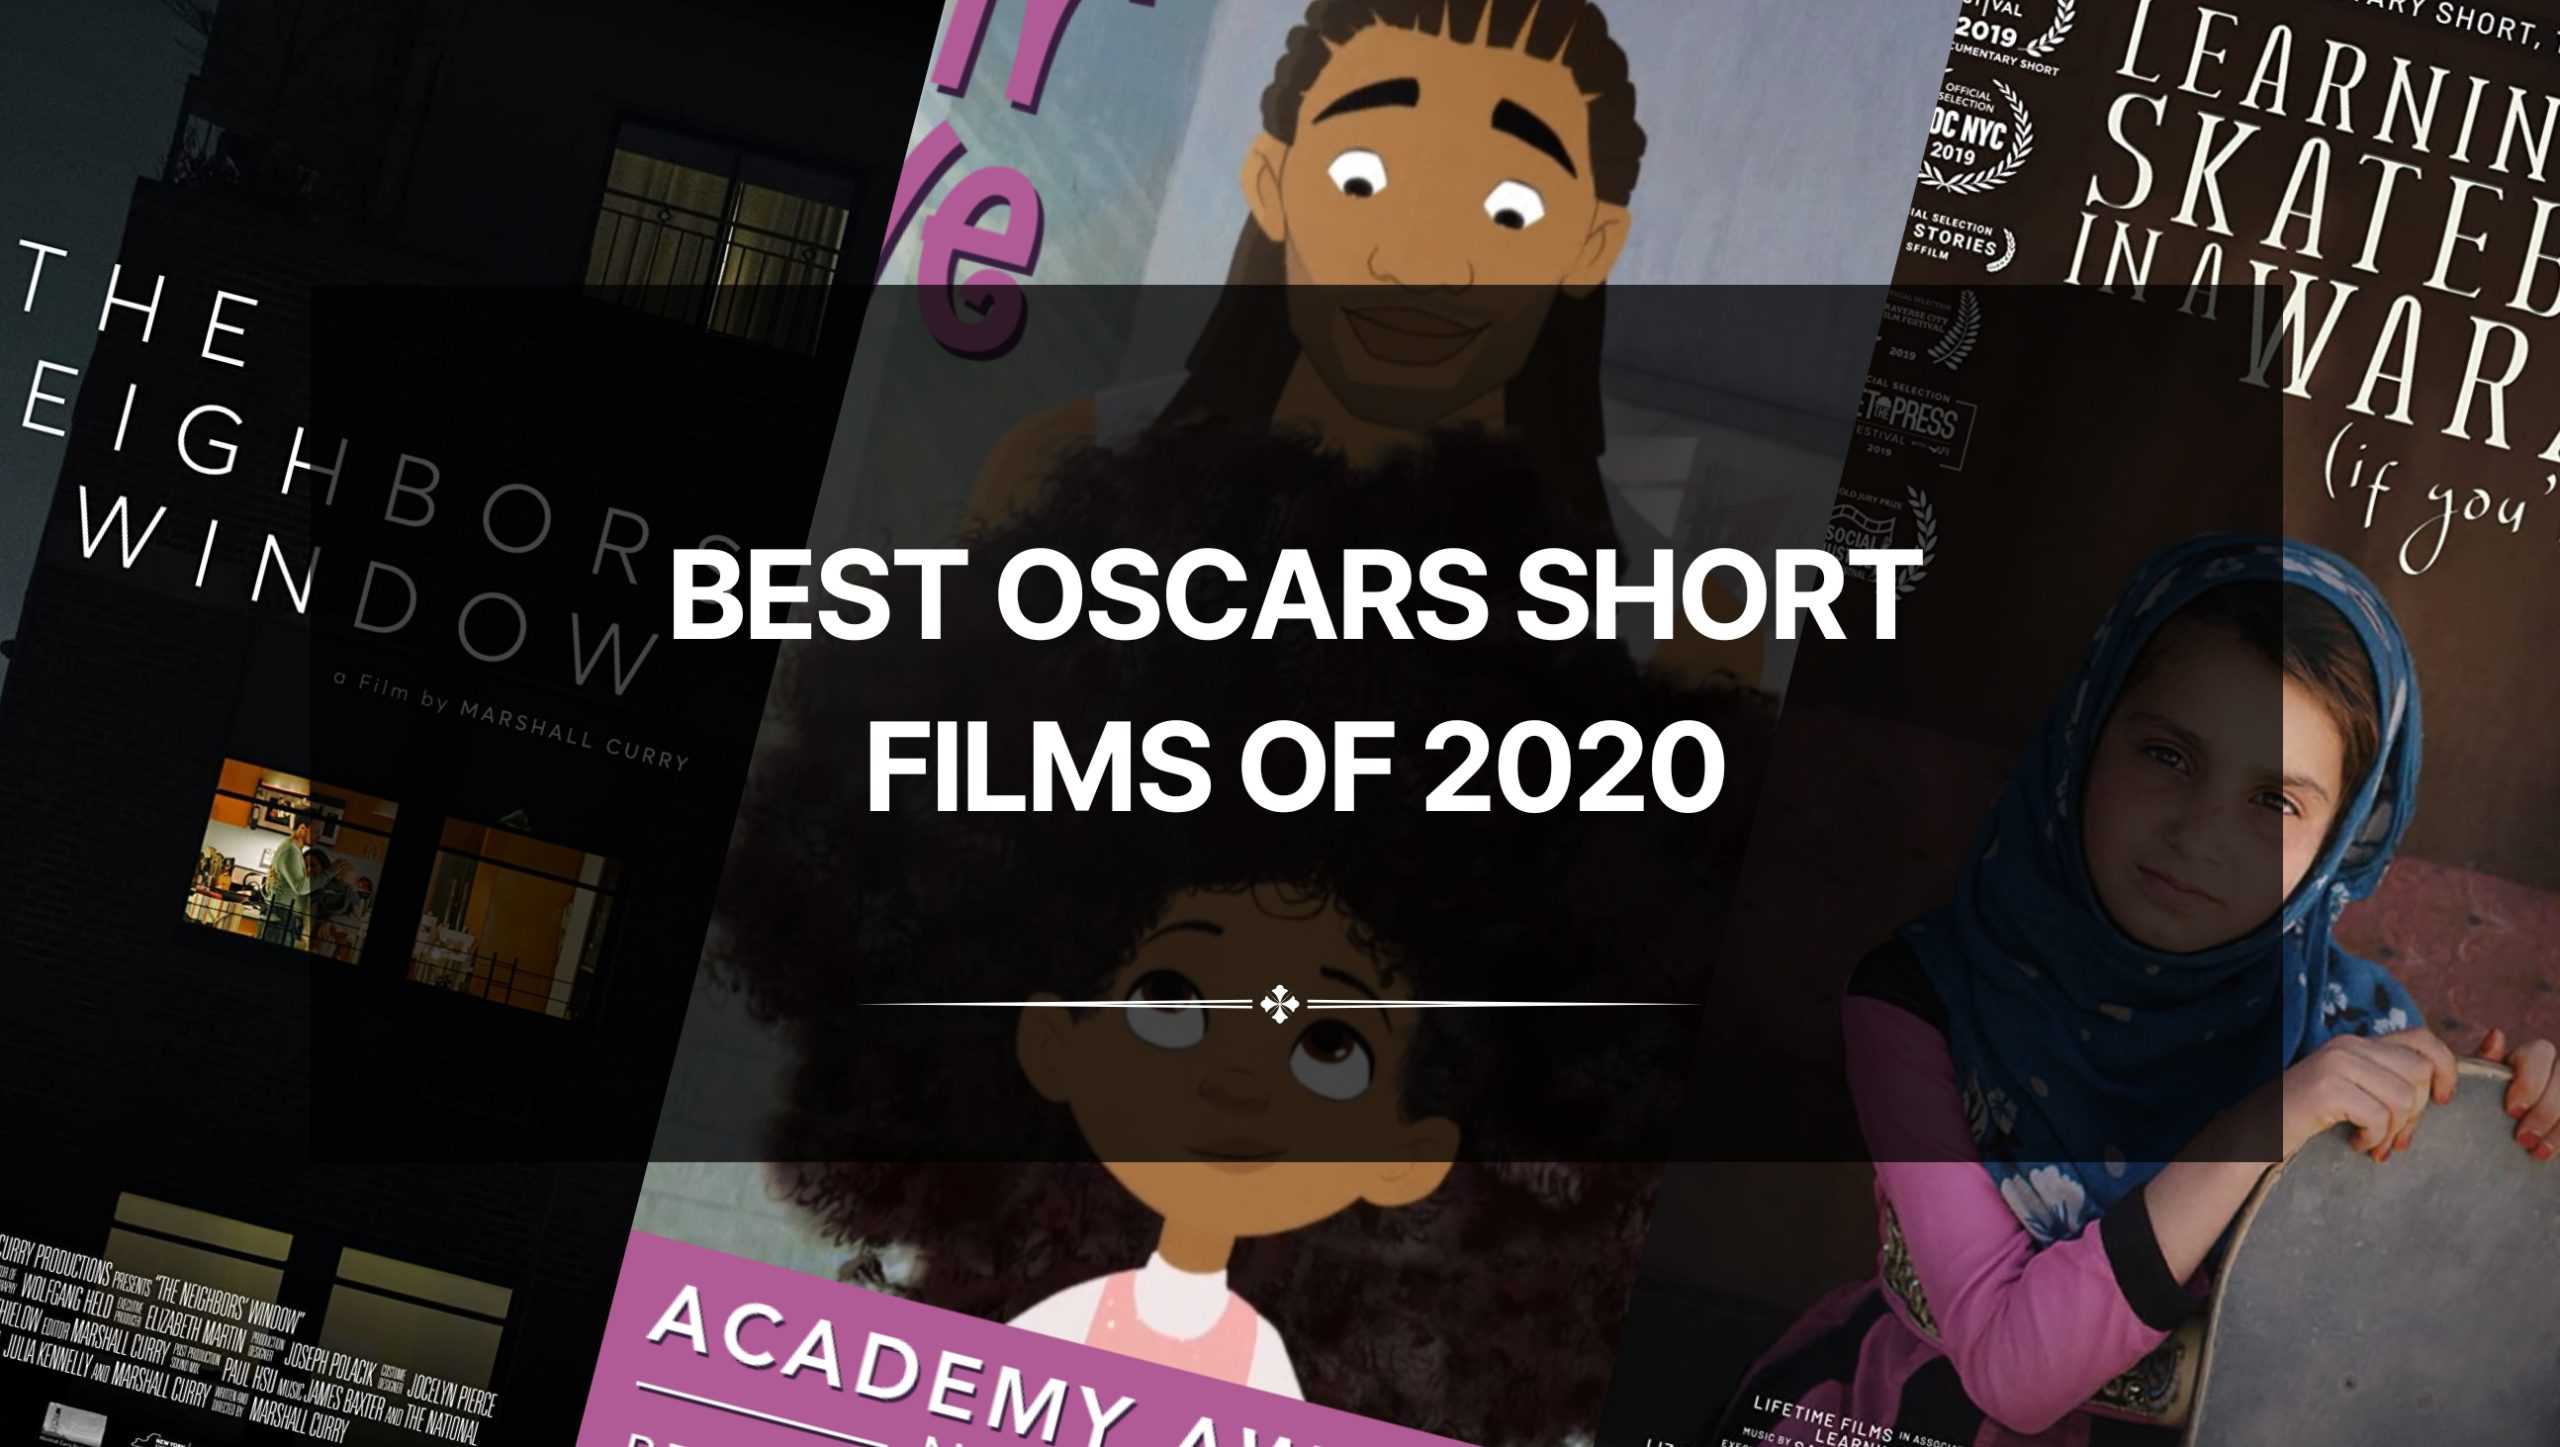 The Best Oscars Short Films of 2020 – An Inspiring List